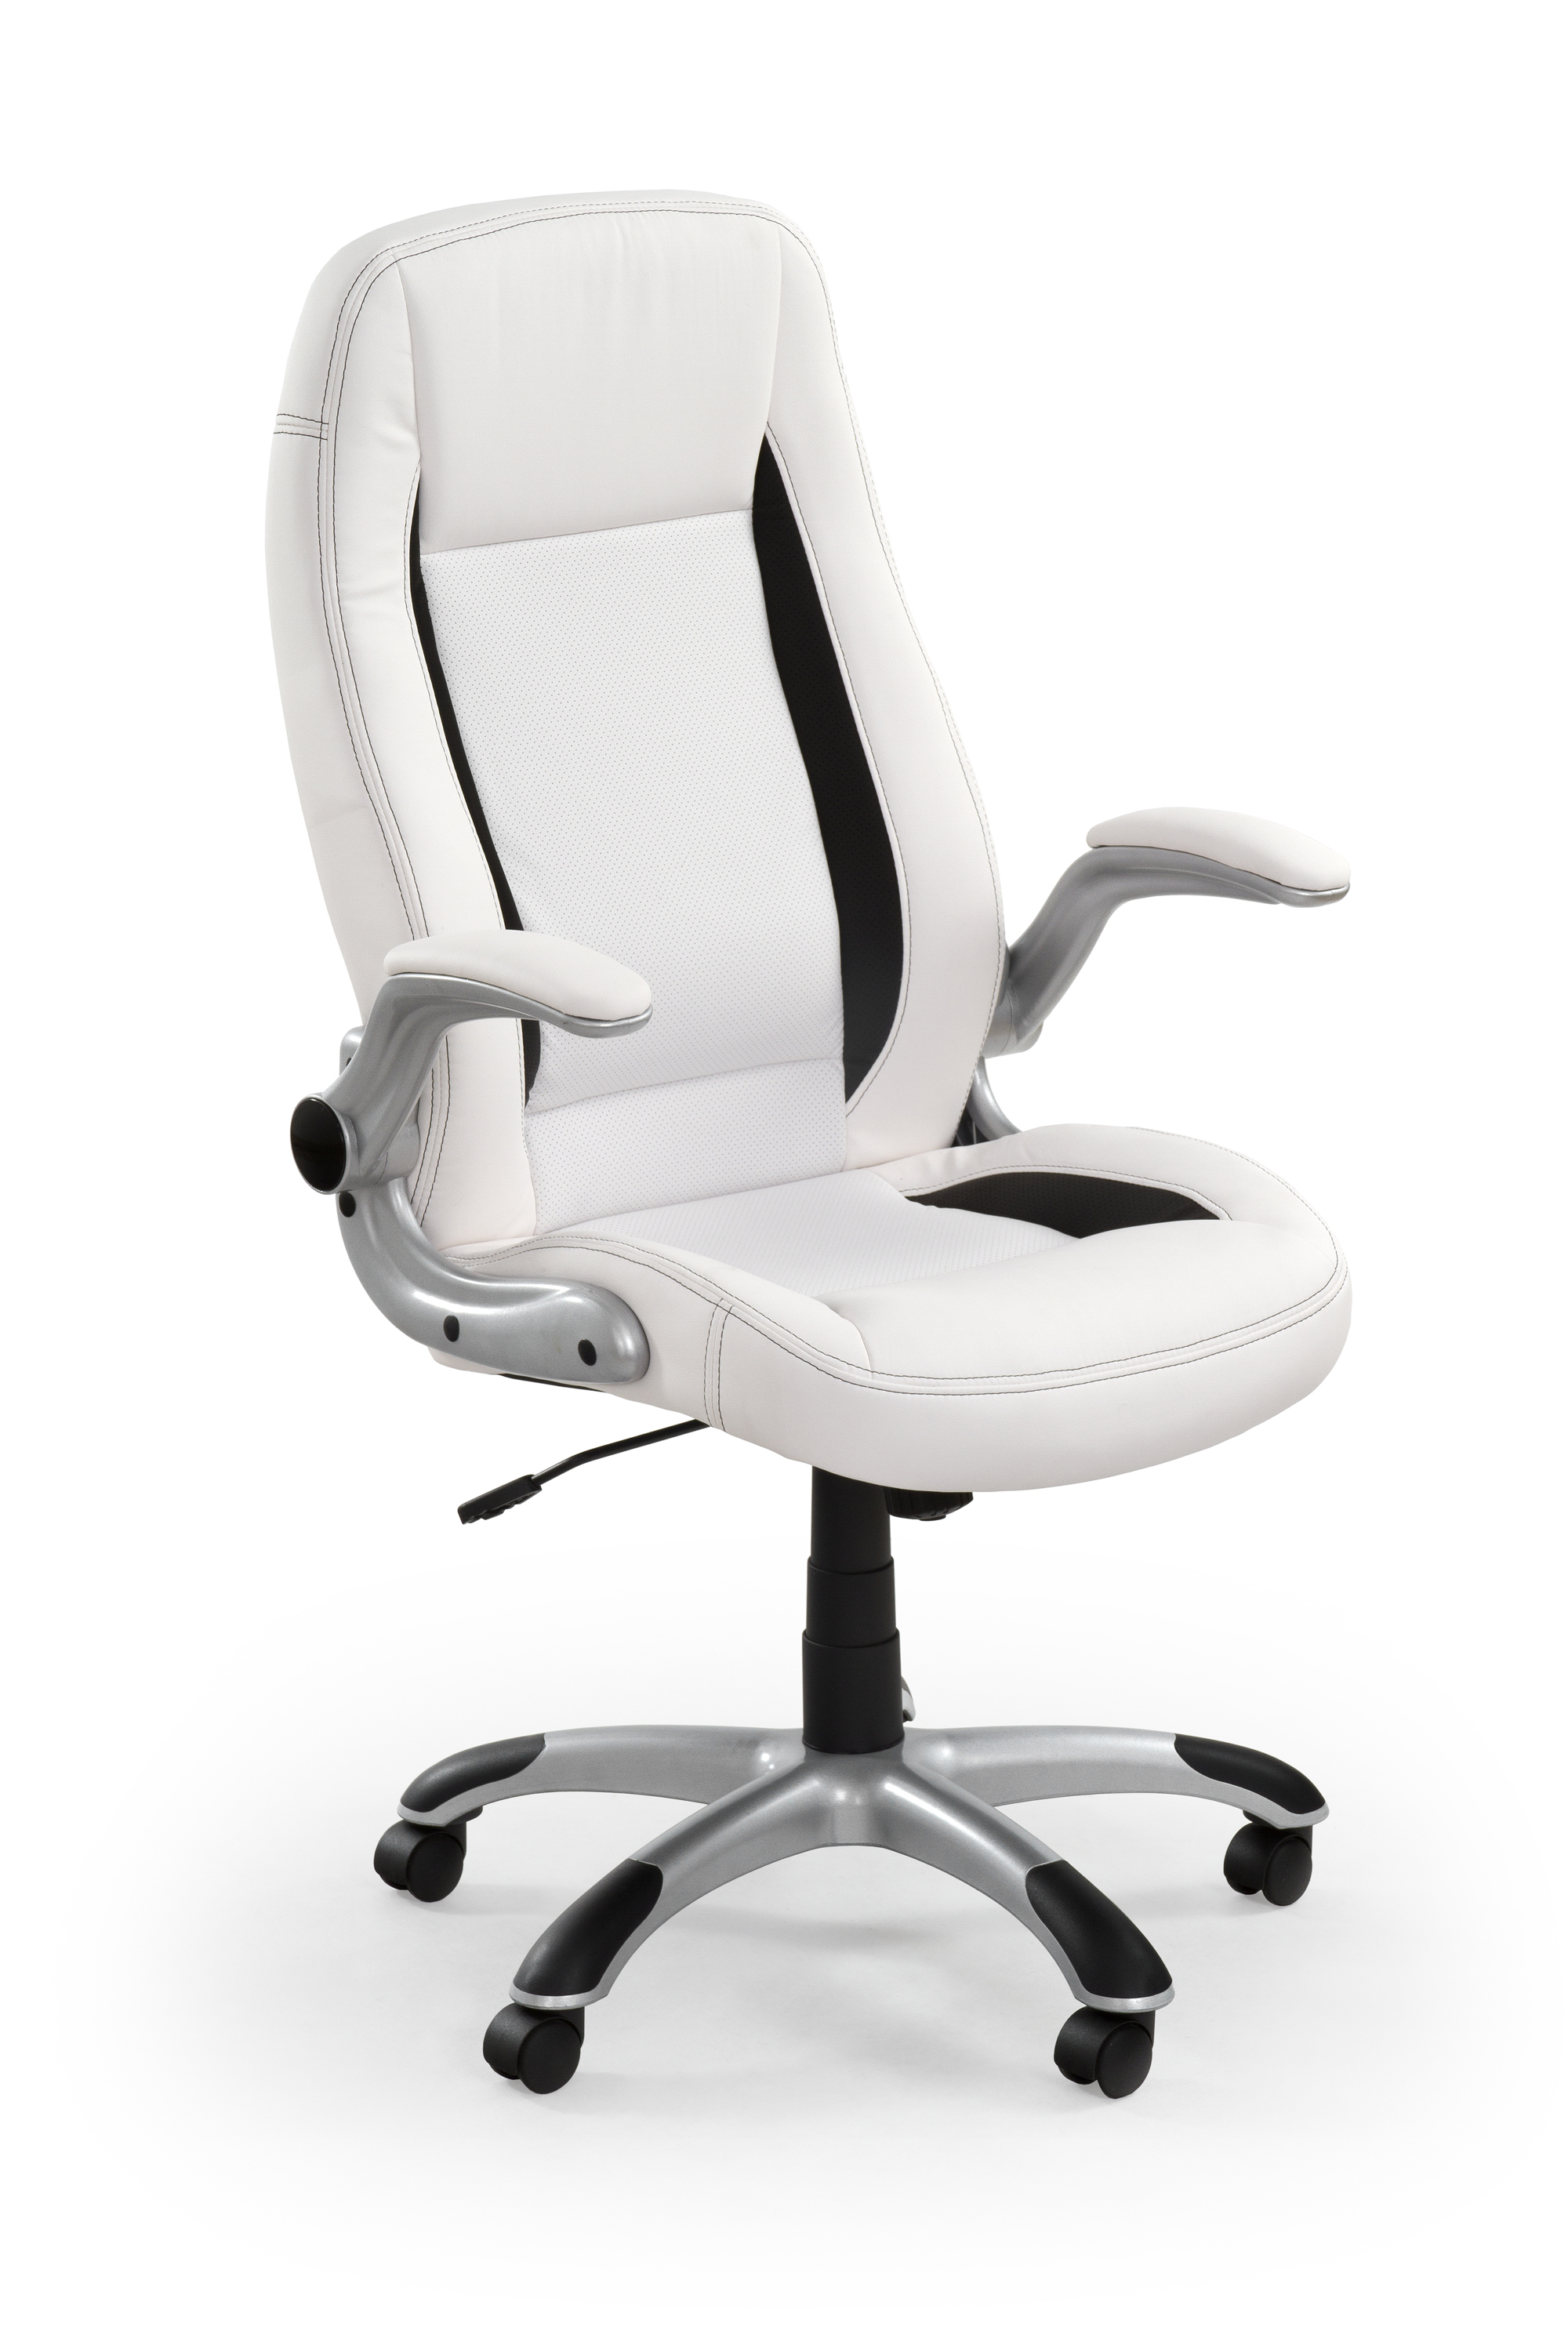 Saturn modern irodai szék - fehér moderní Kancelářske křeslo saturn - Bílý